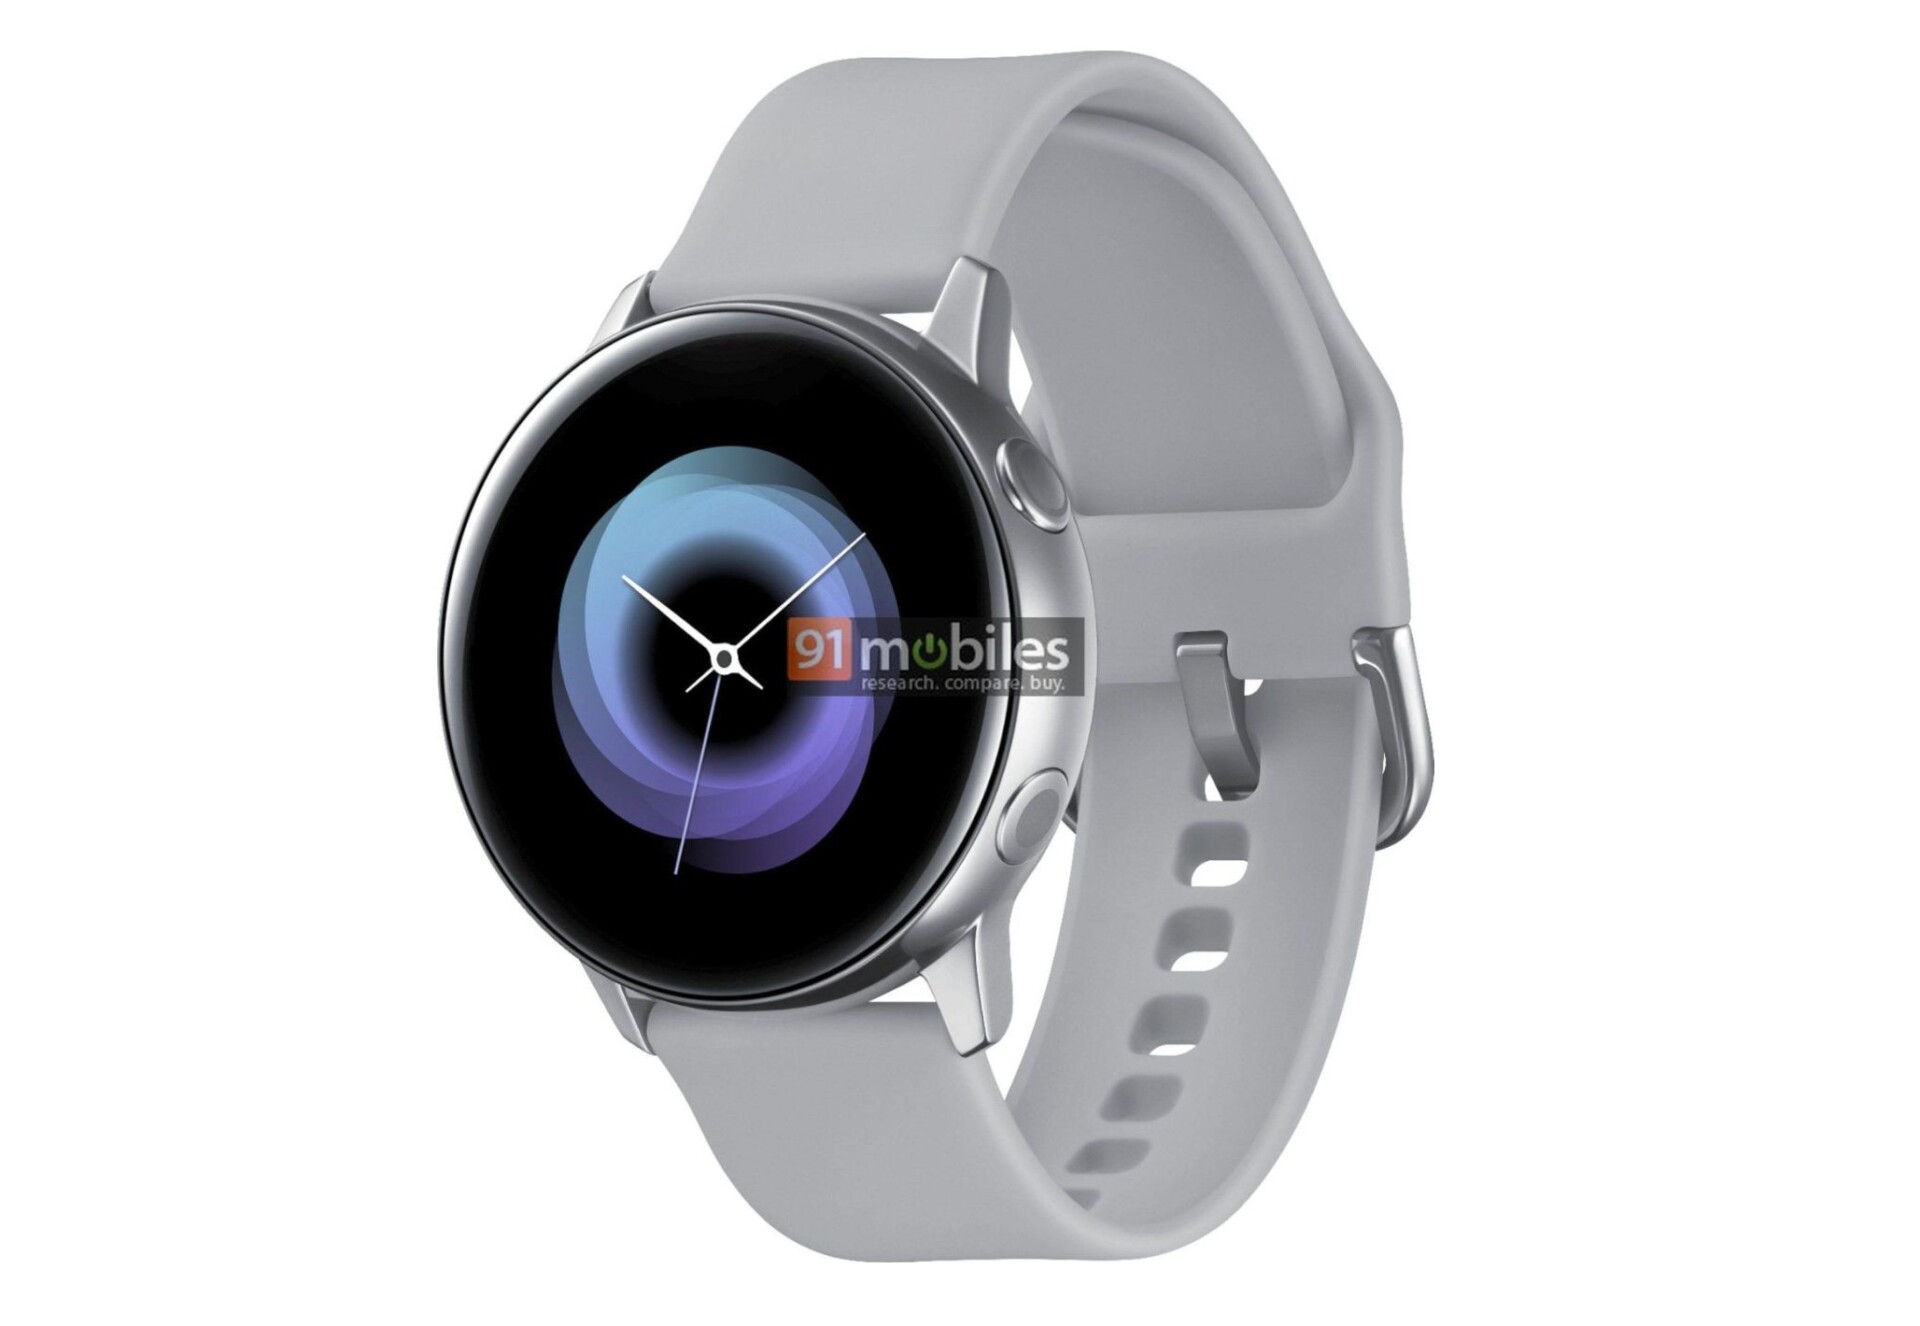 Samsung Galaxy Sport smartwatch render 